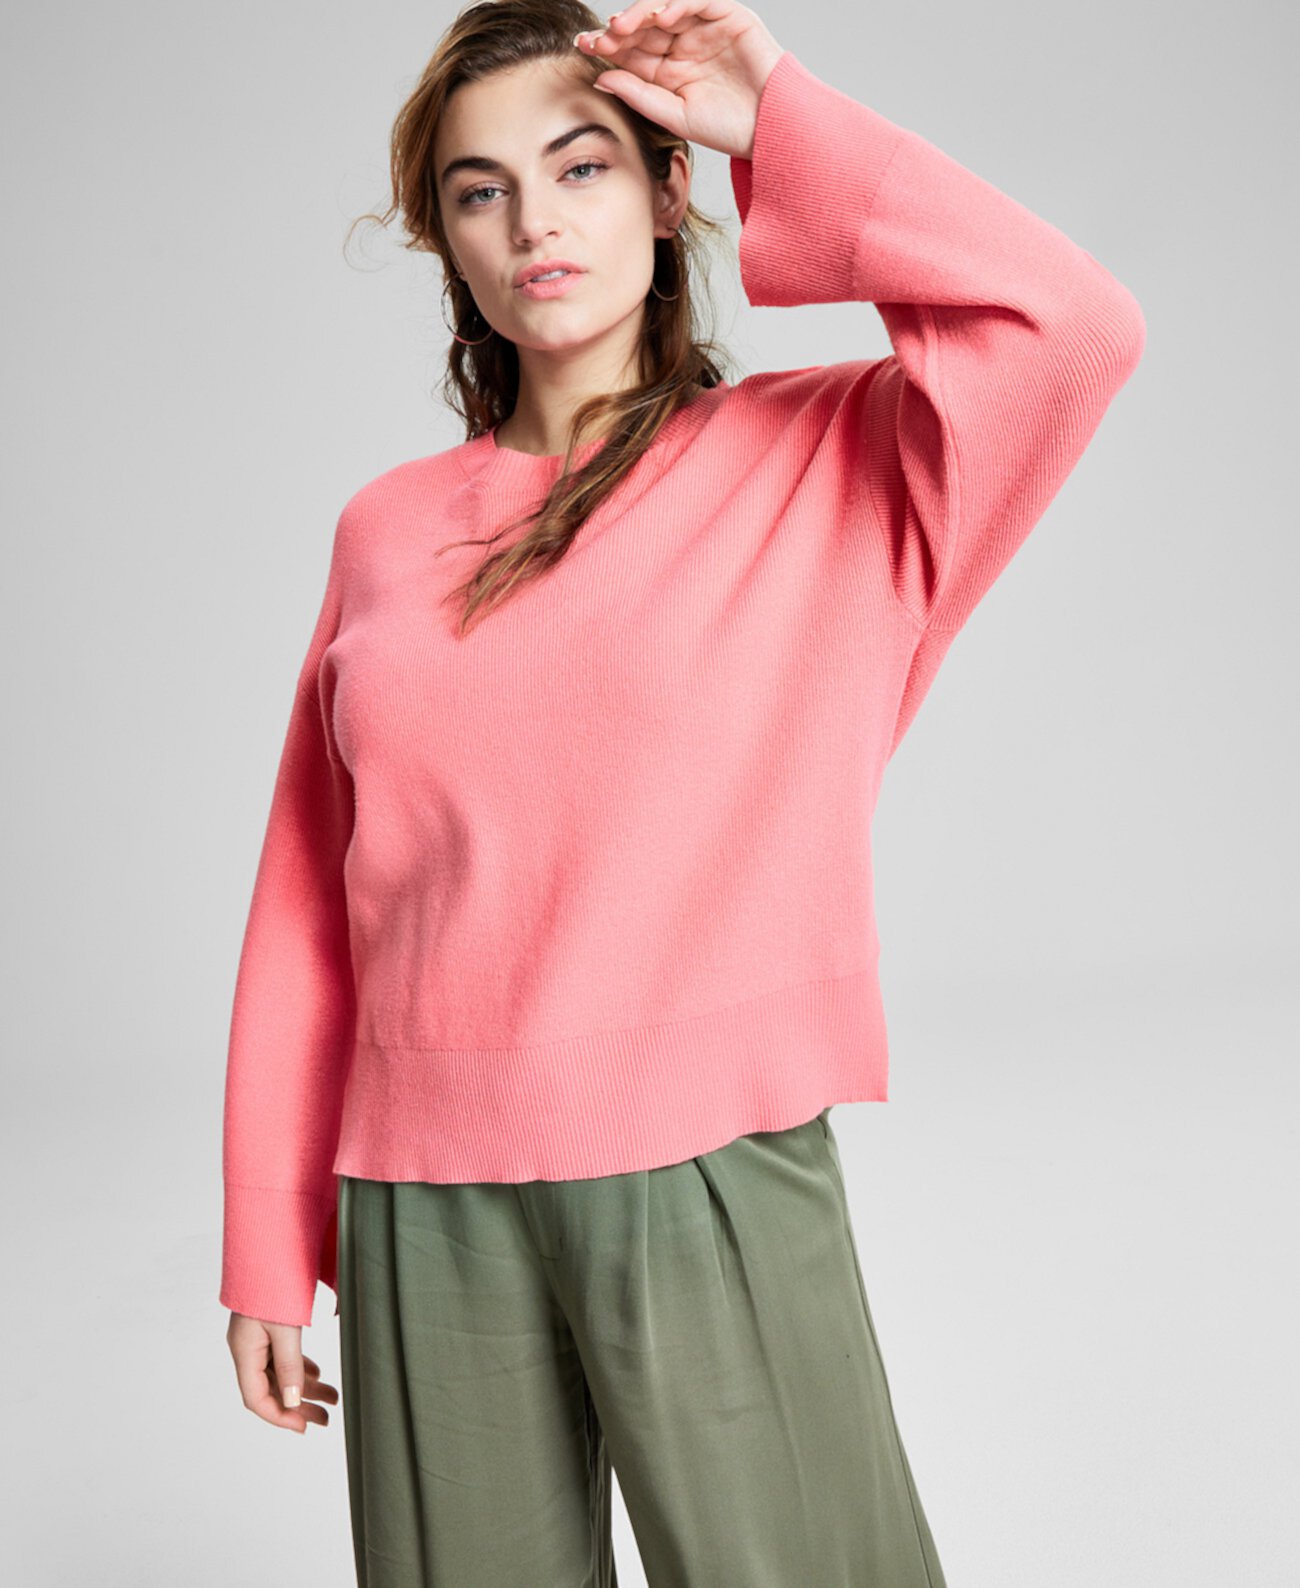 Женский полосатый свитер с круглым вырезом и разрезными манжетами, созданный для Macy's And Now This